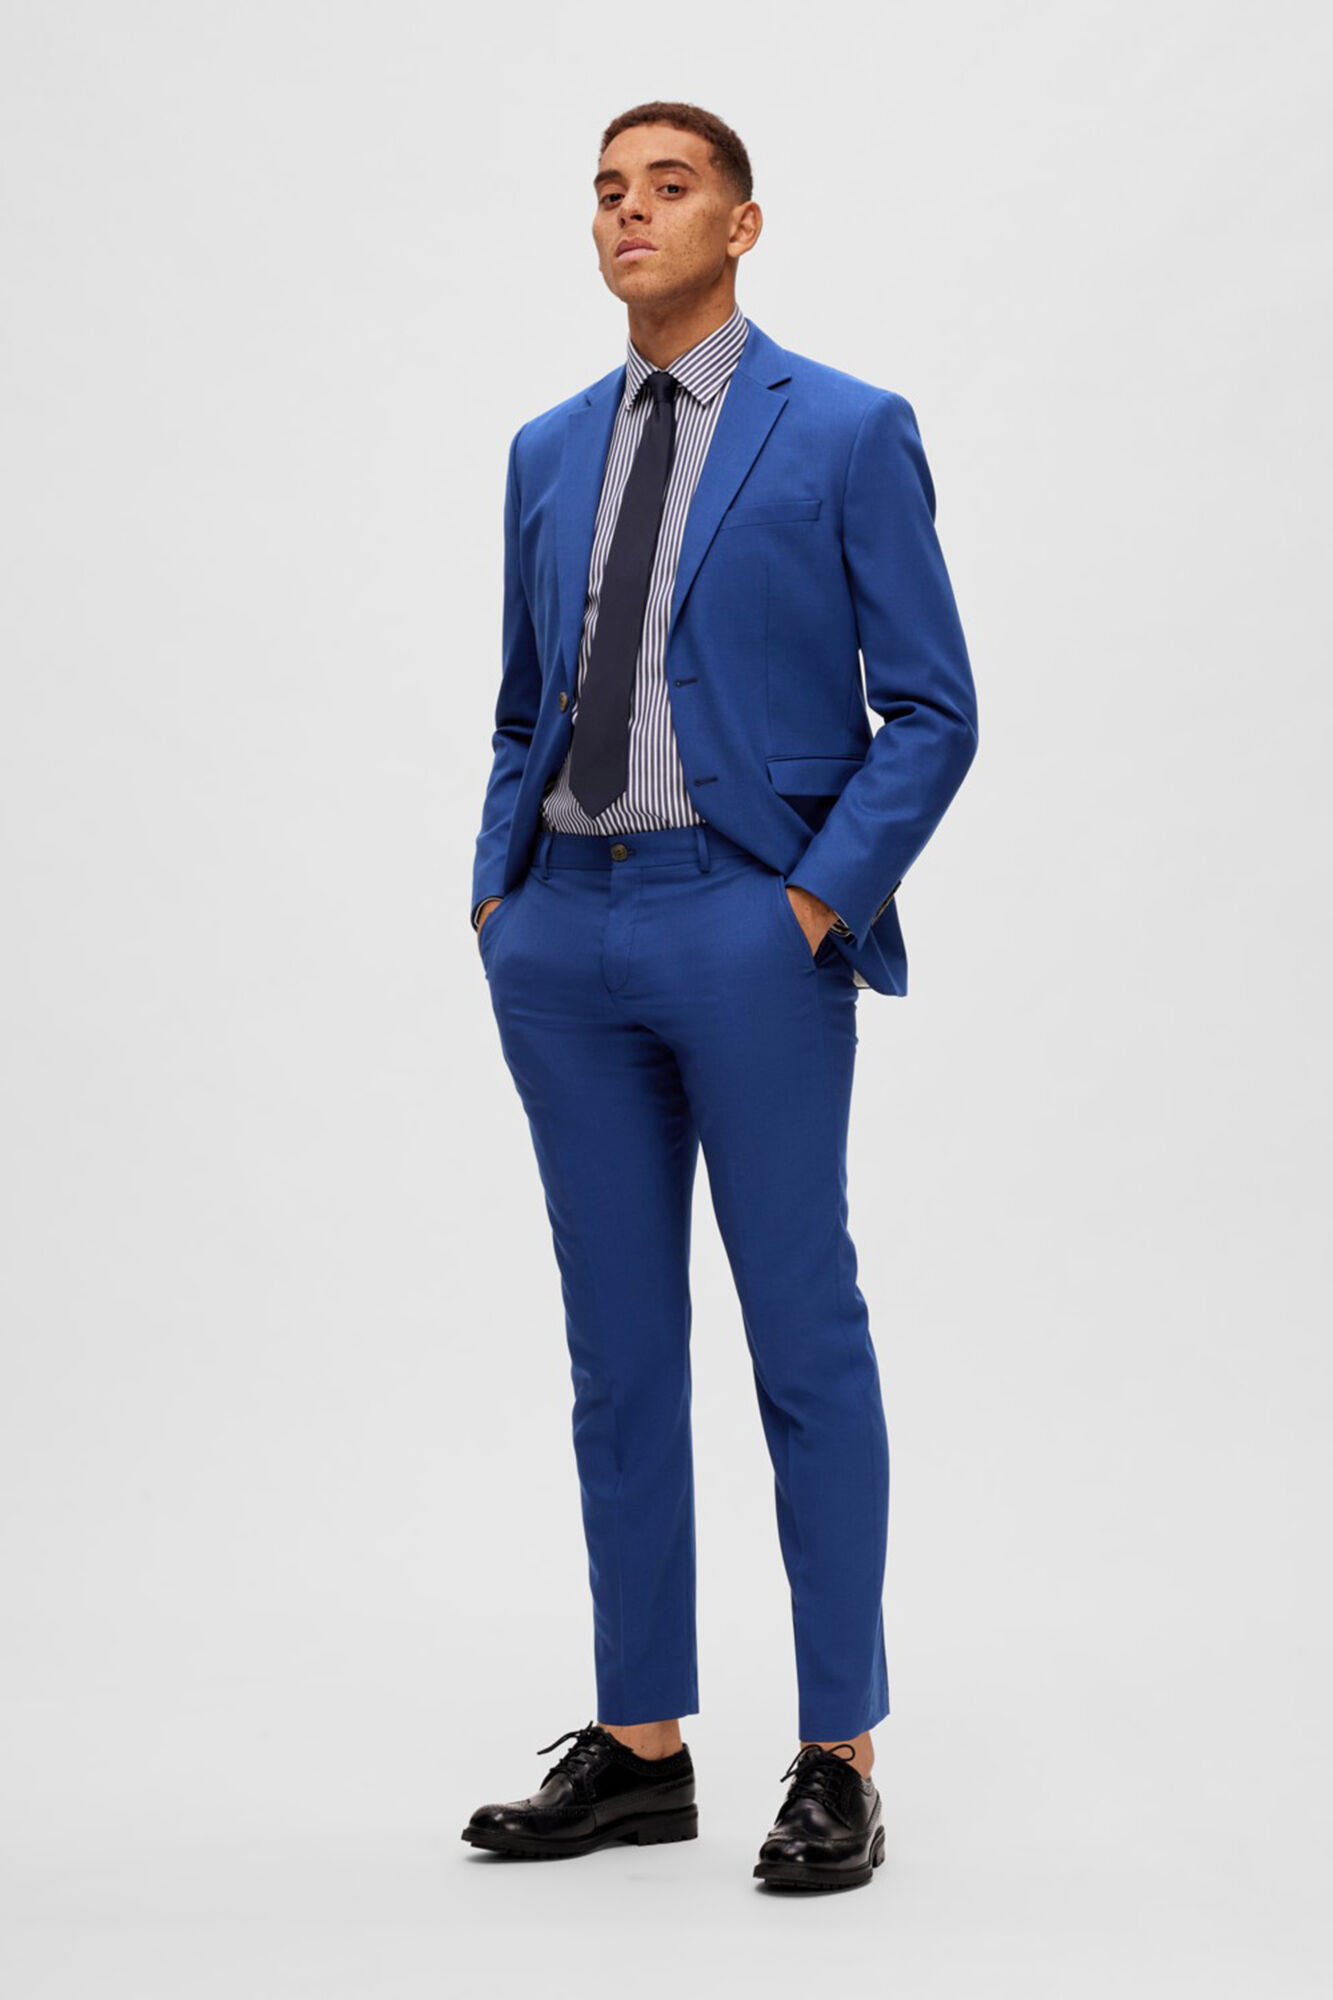 Slim Fit Suit Men's 2-Piece Business Men's Suit Jacket Trousers Two Piece  Suits for Wedding Business Elegant Floral Tuxedo Suit Jacket Suit Trousers  Men's Blazer Work Trousers Party Prom Dinner Set, :